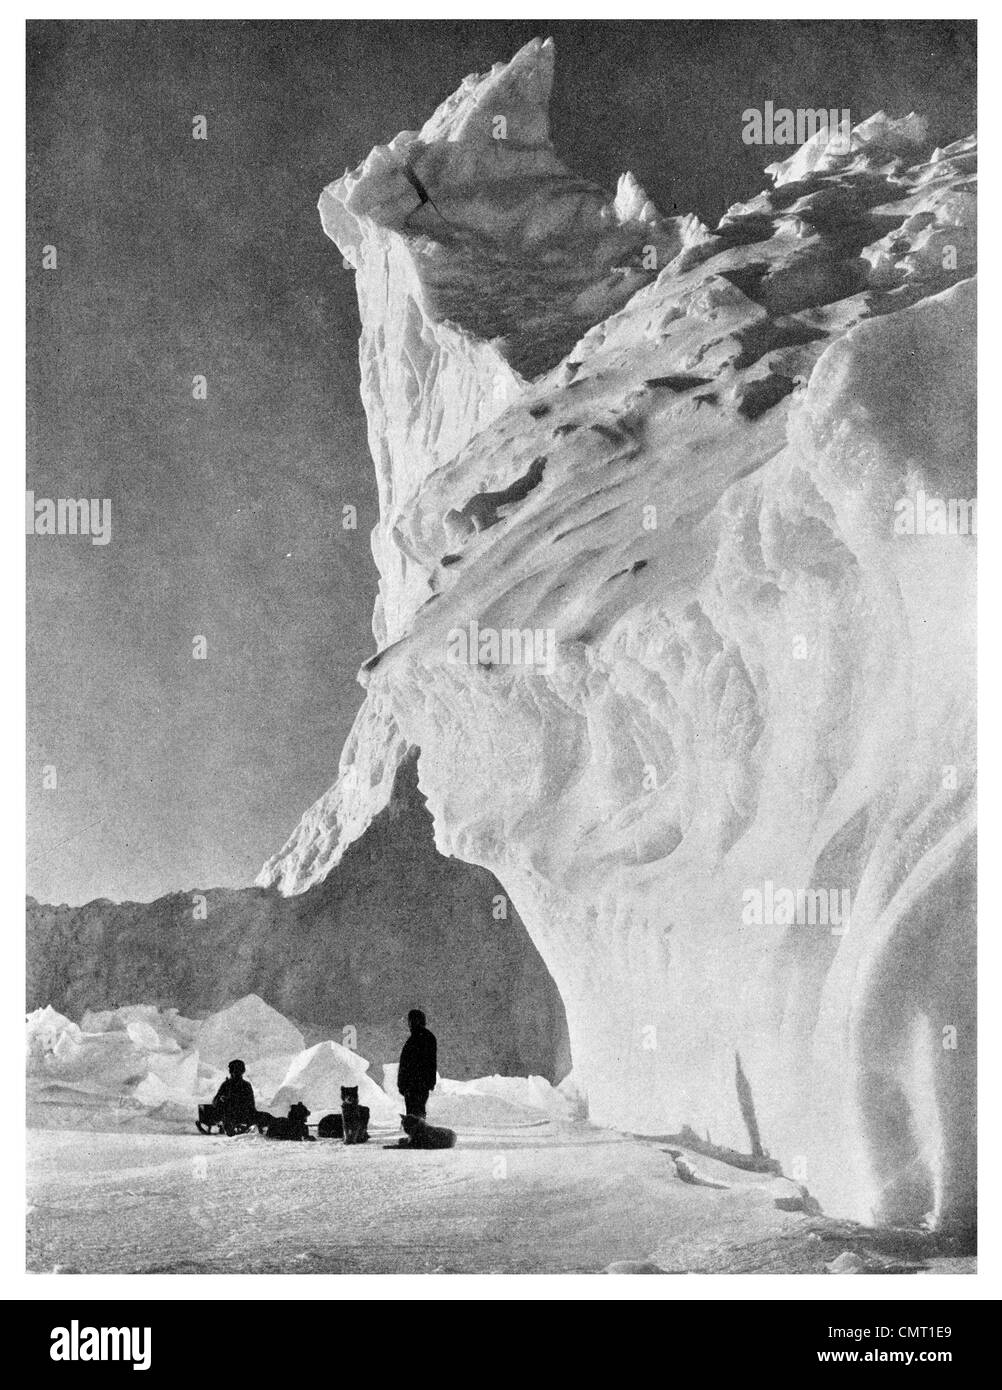 1912 team cane in appoggio su Iceberg Antartico grande barriera di ghiaccio di Terra Nova Expedition, ufficialmente il British Antarctic Expedition Foto Stock